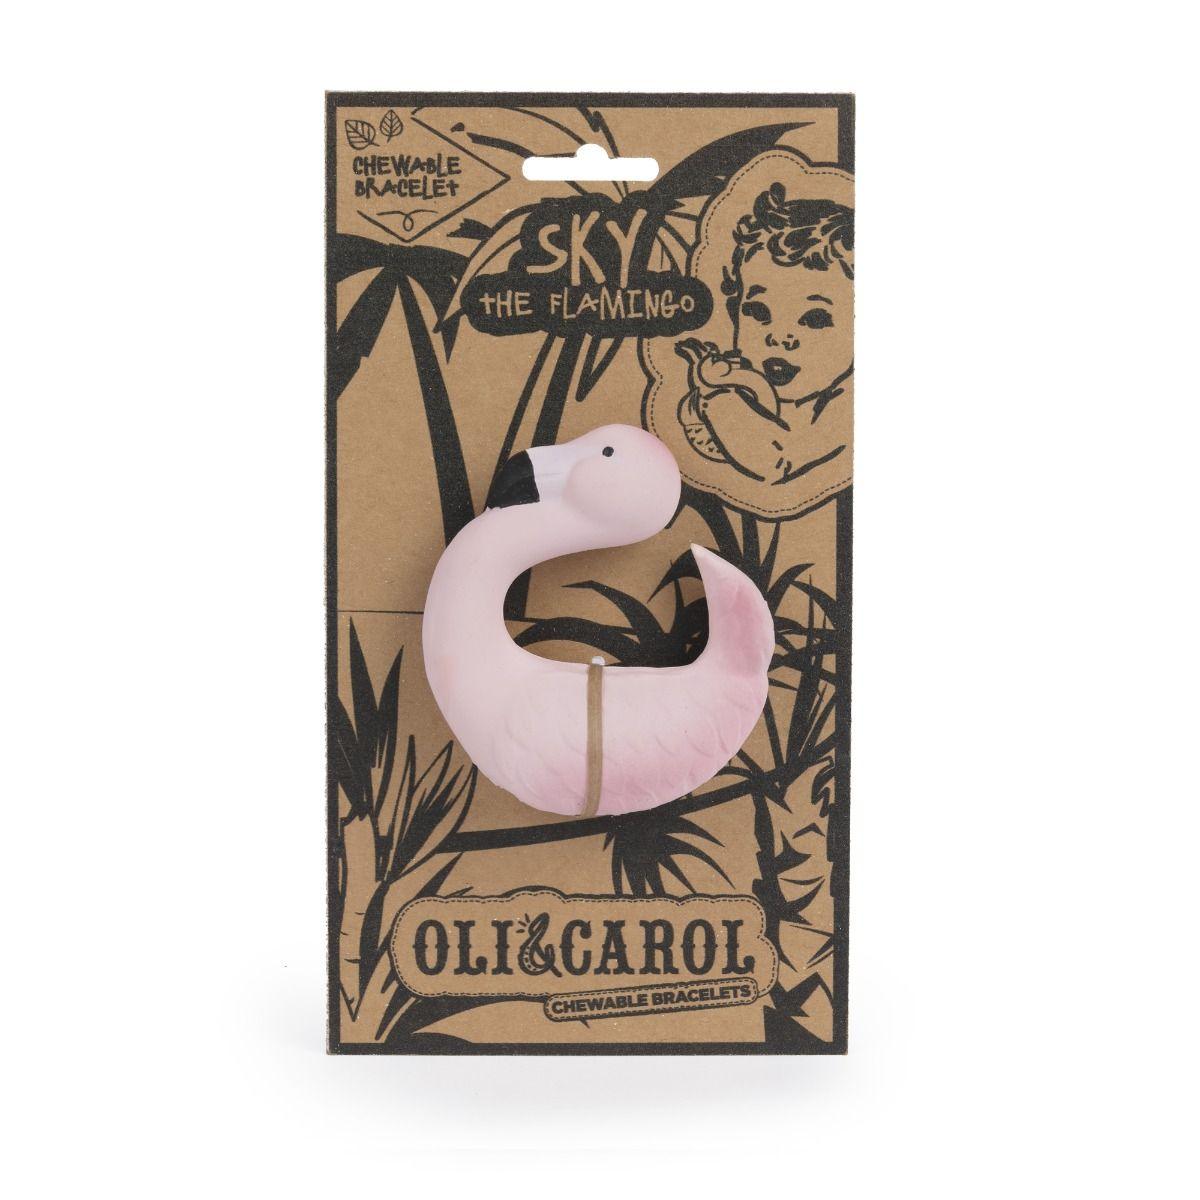 Oli & Carol | Jouet de caoutchouc 100% naturel | Bracelet | Sky the Flamingo - Oli & Carol